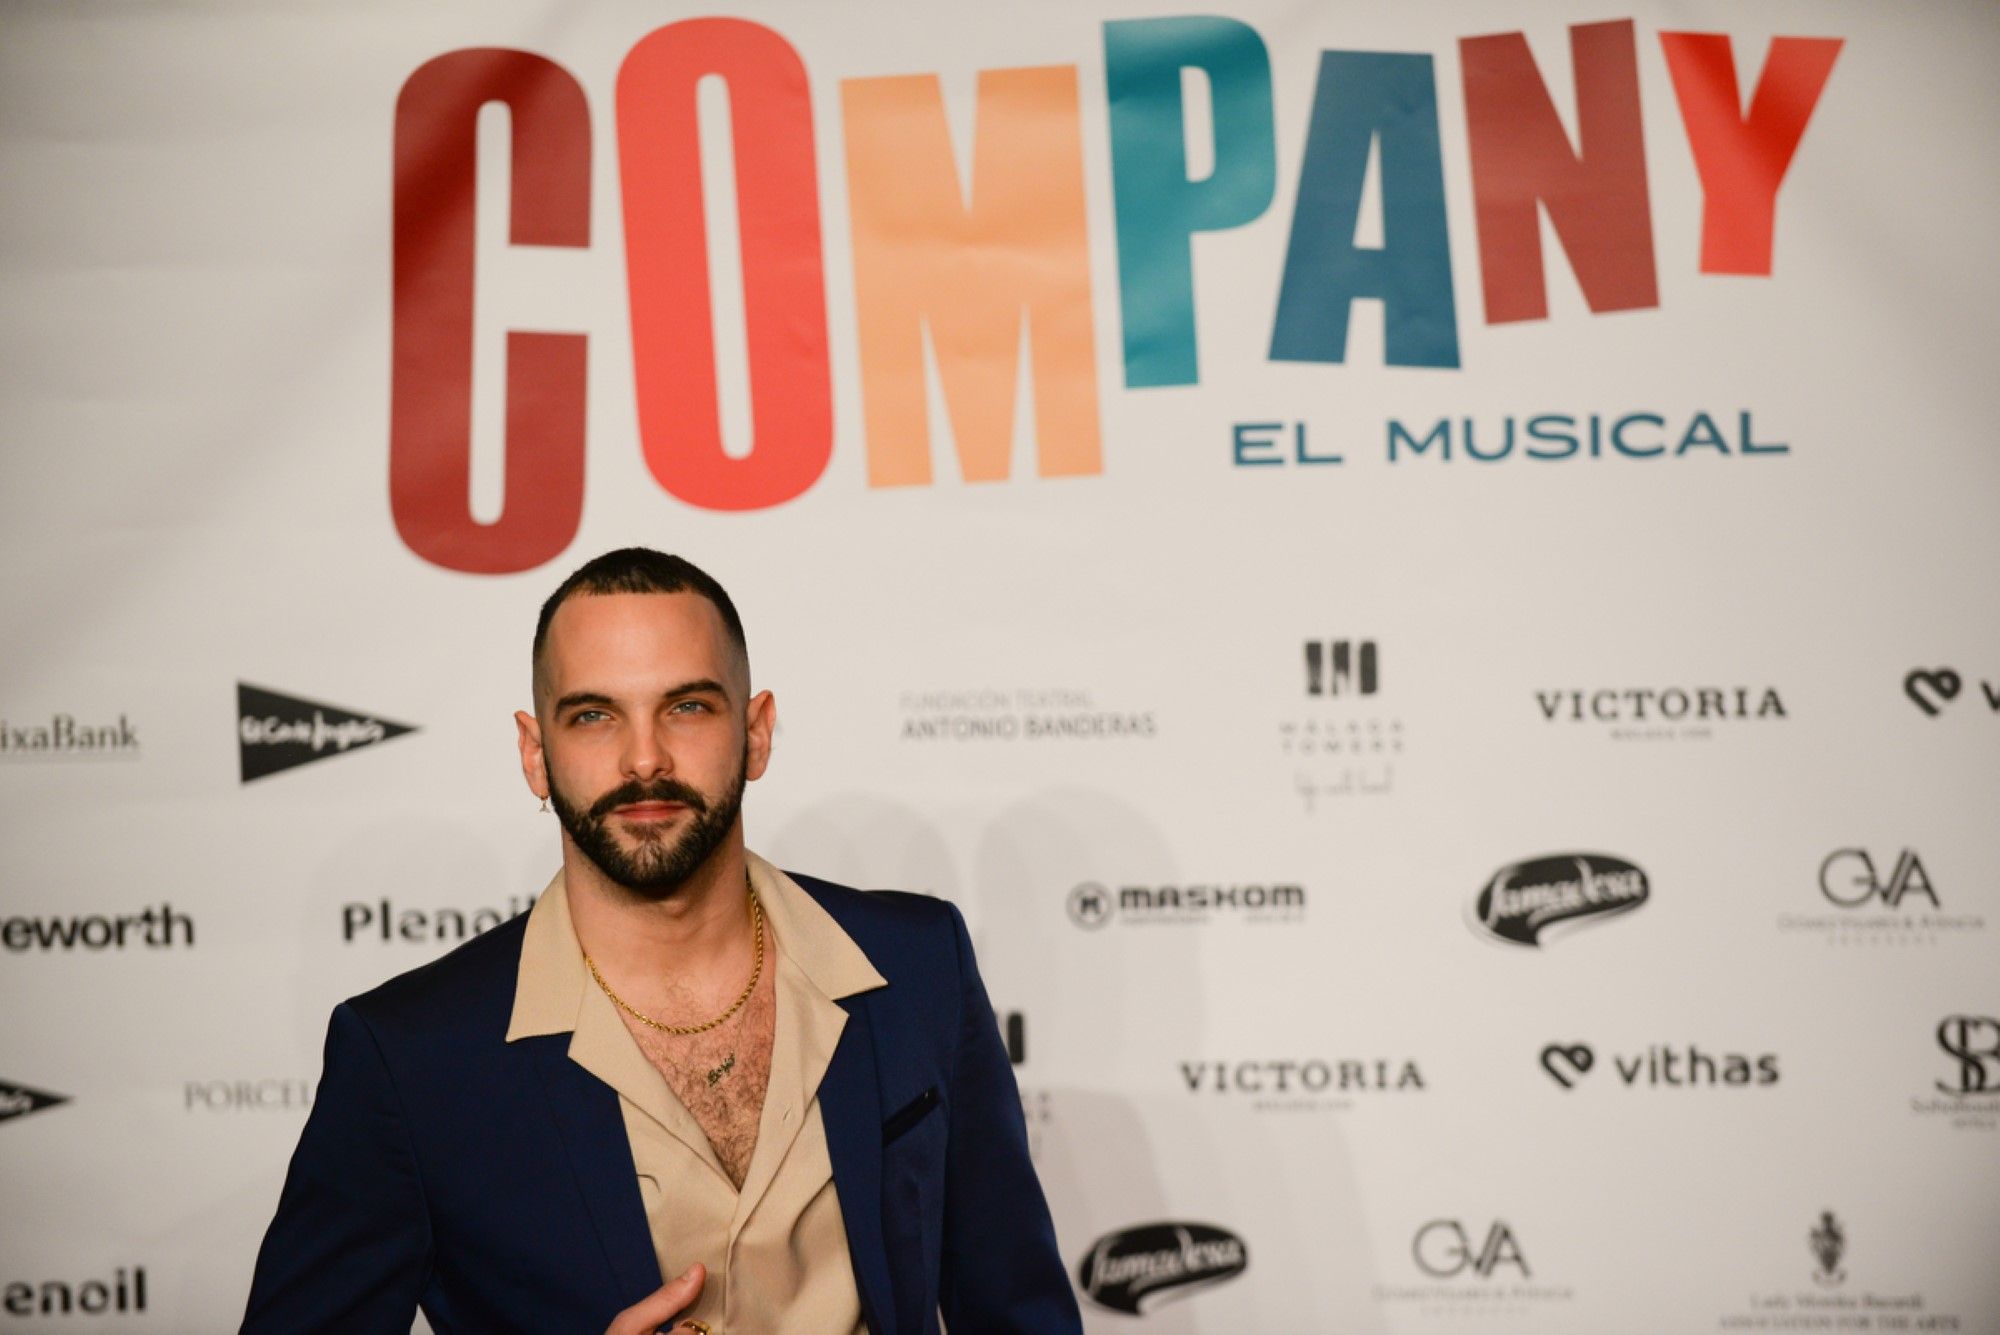 El Teatro El Soho acoge el estreno de 'Company' de Antonio Banderas